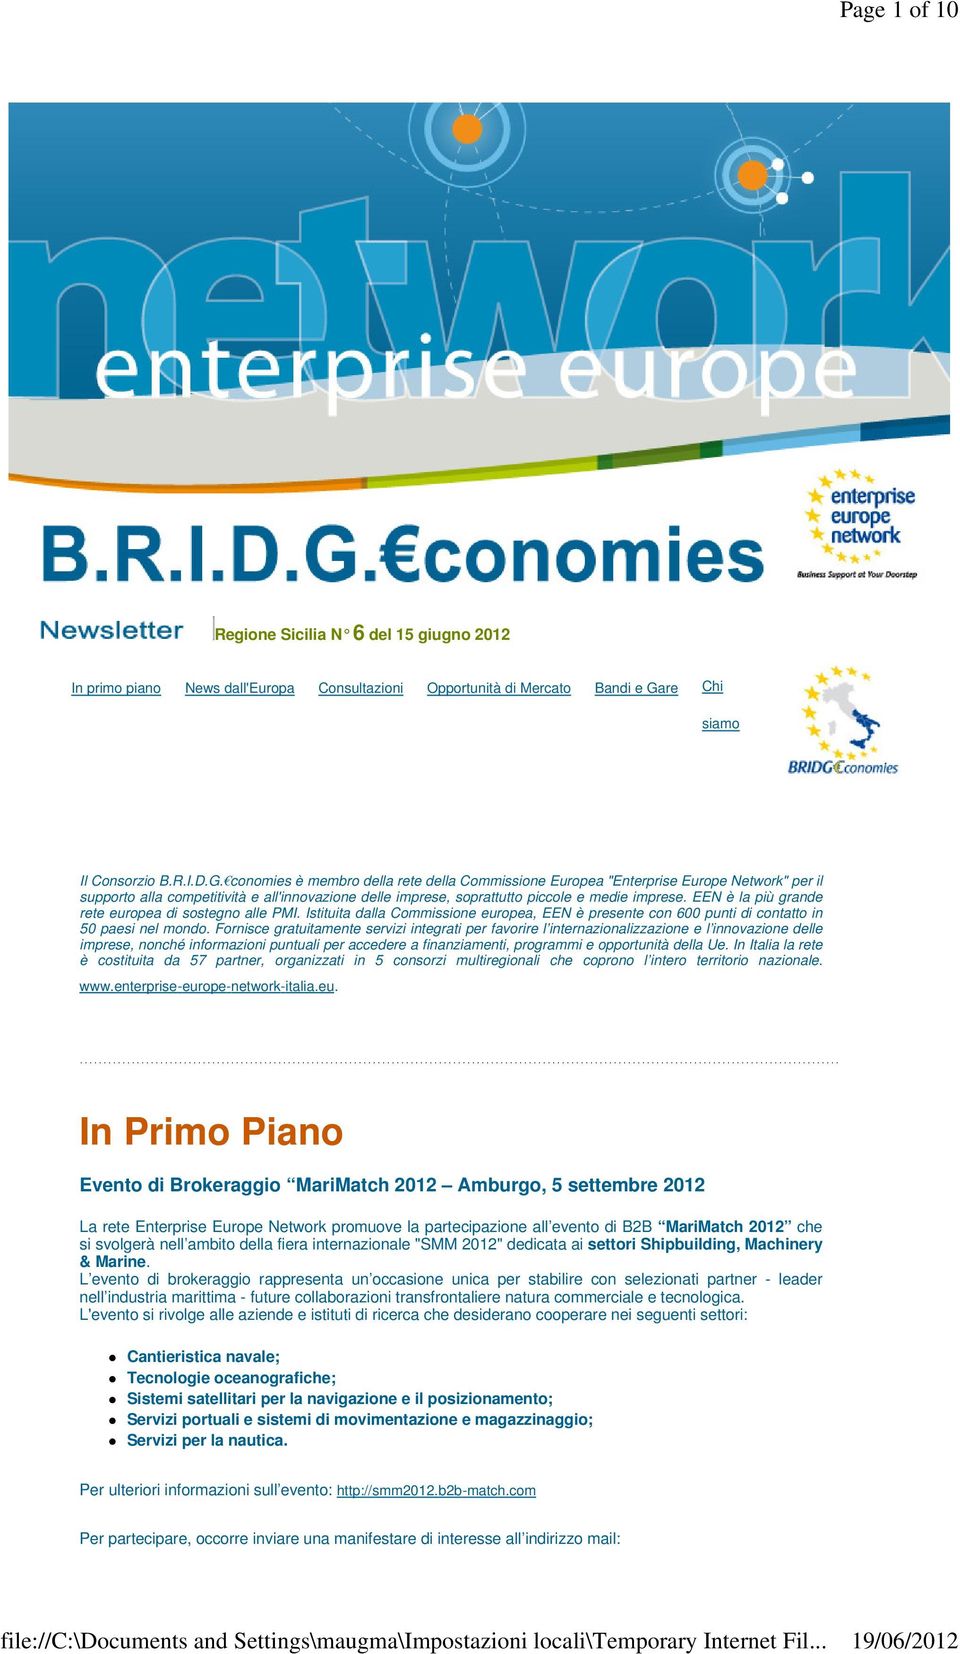 conomies è membro della rete della Commissione Europea "Enterprise Europe Network" per il supporto alla competitività e all'innovazione delle imprese, soprattutto piccole e medie imprese.